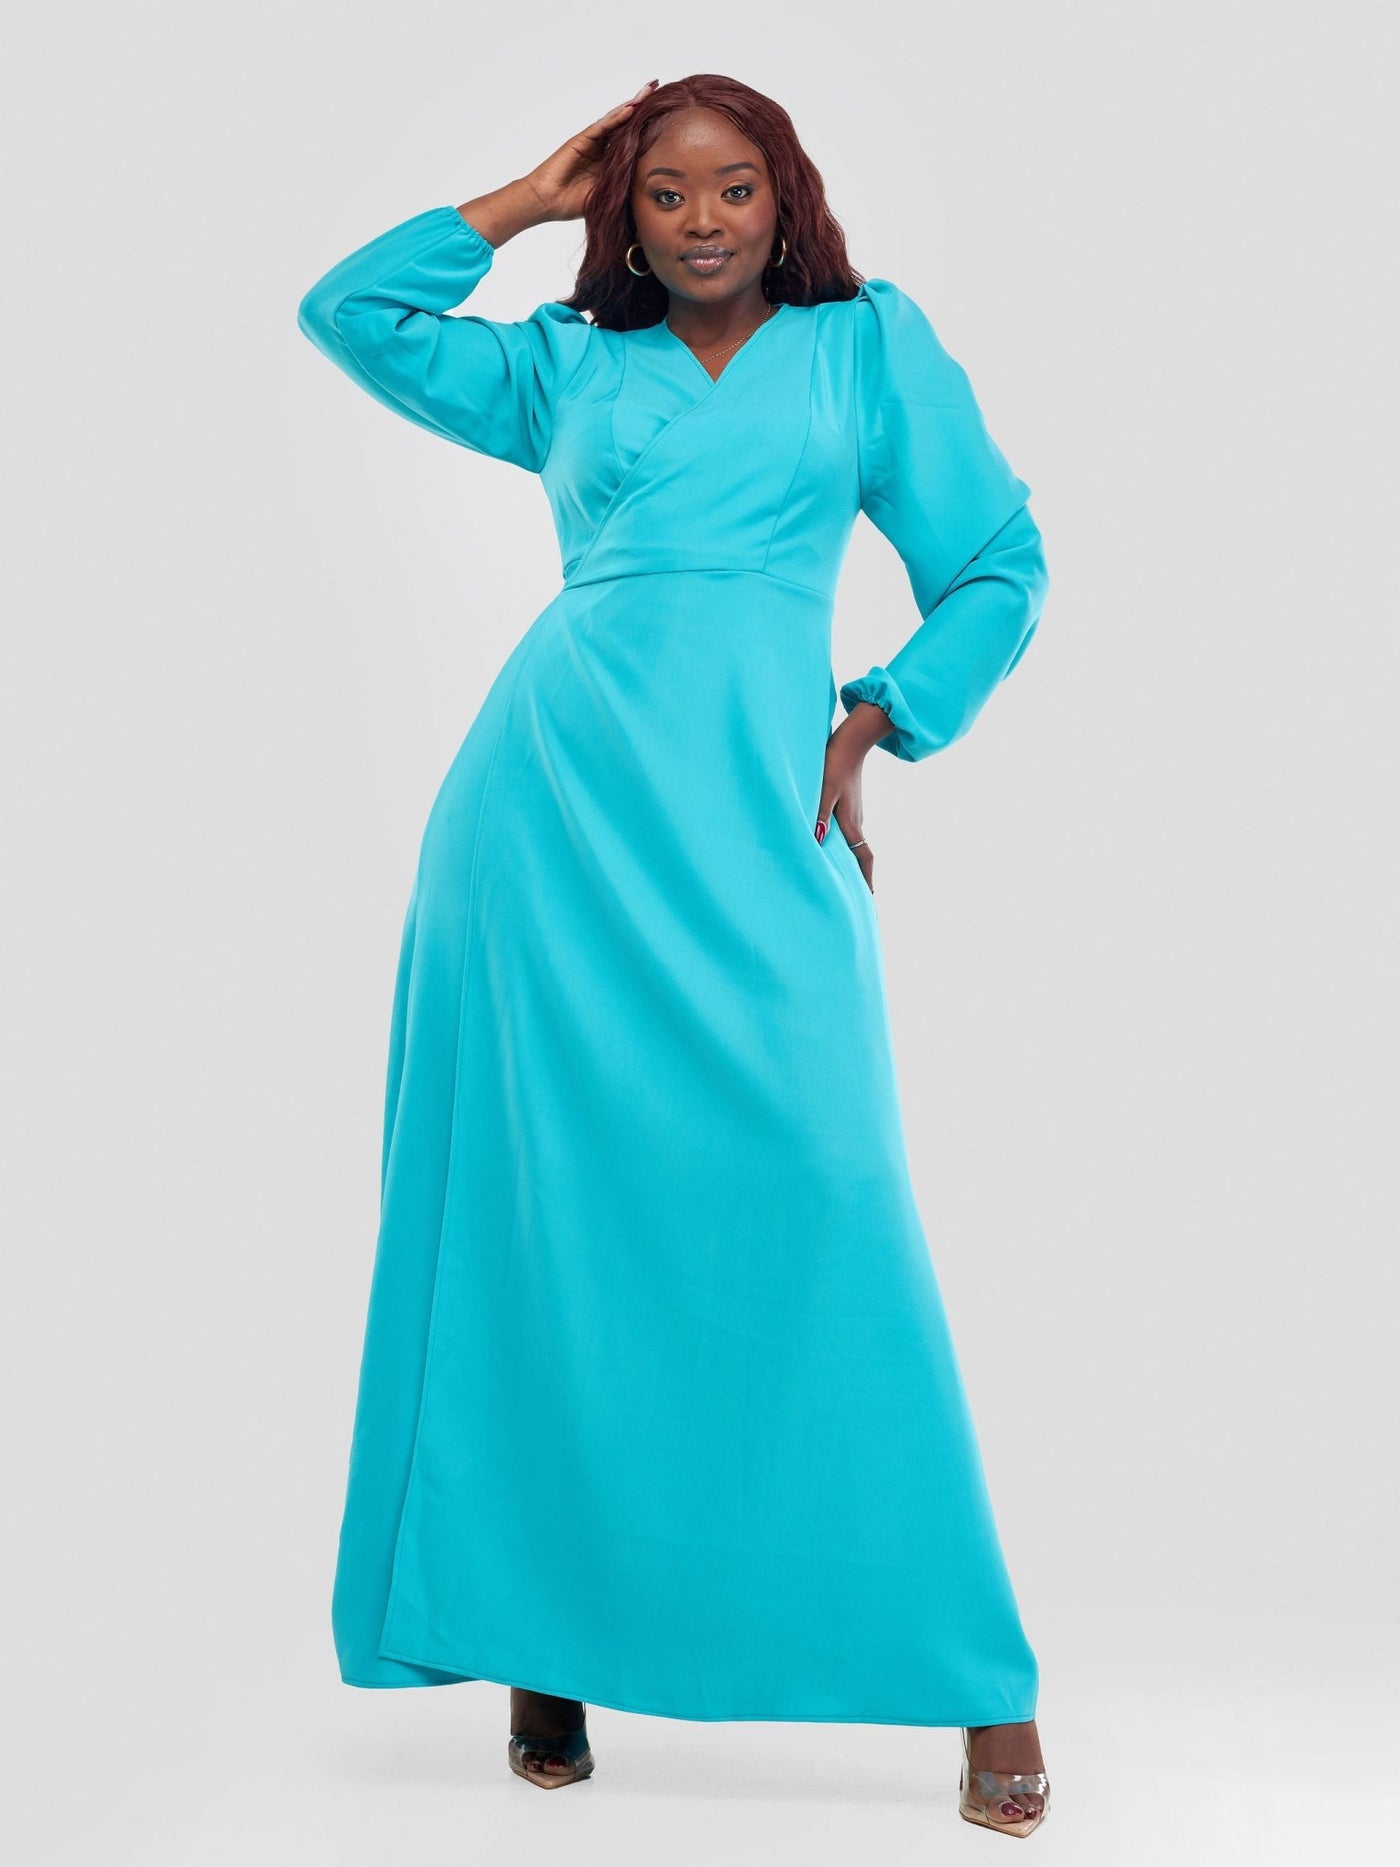 Zia Africa ''Santana'' Maxi Dress - Turquoise - Shopzetu